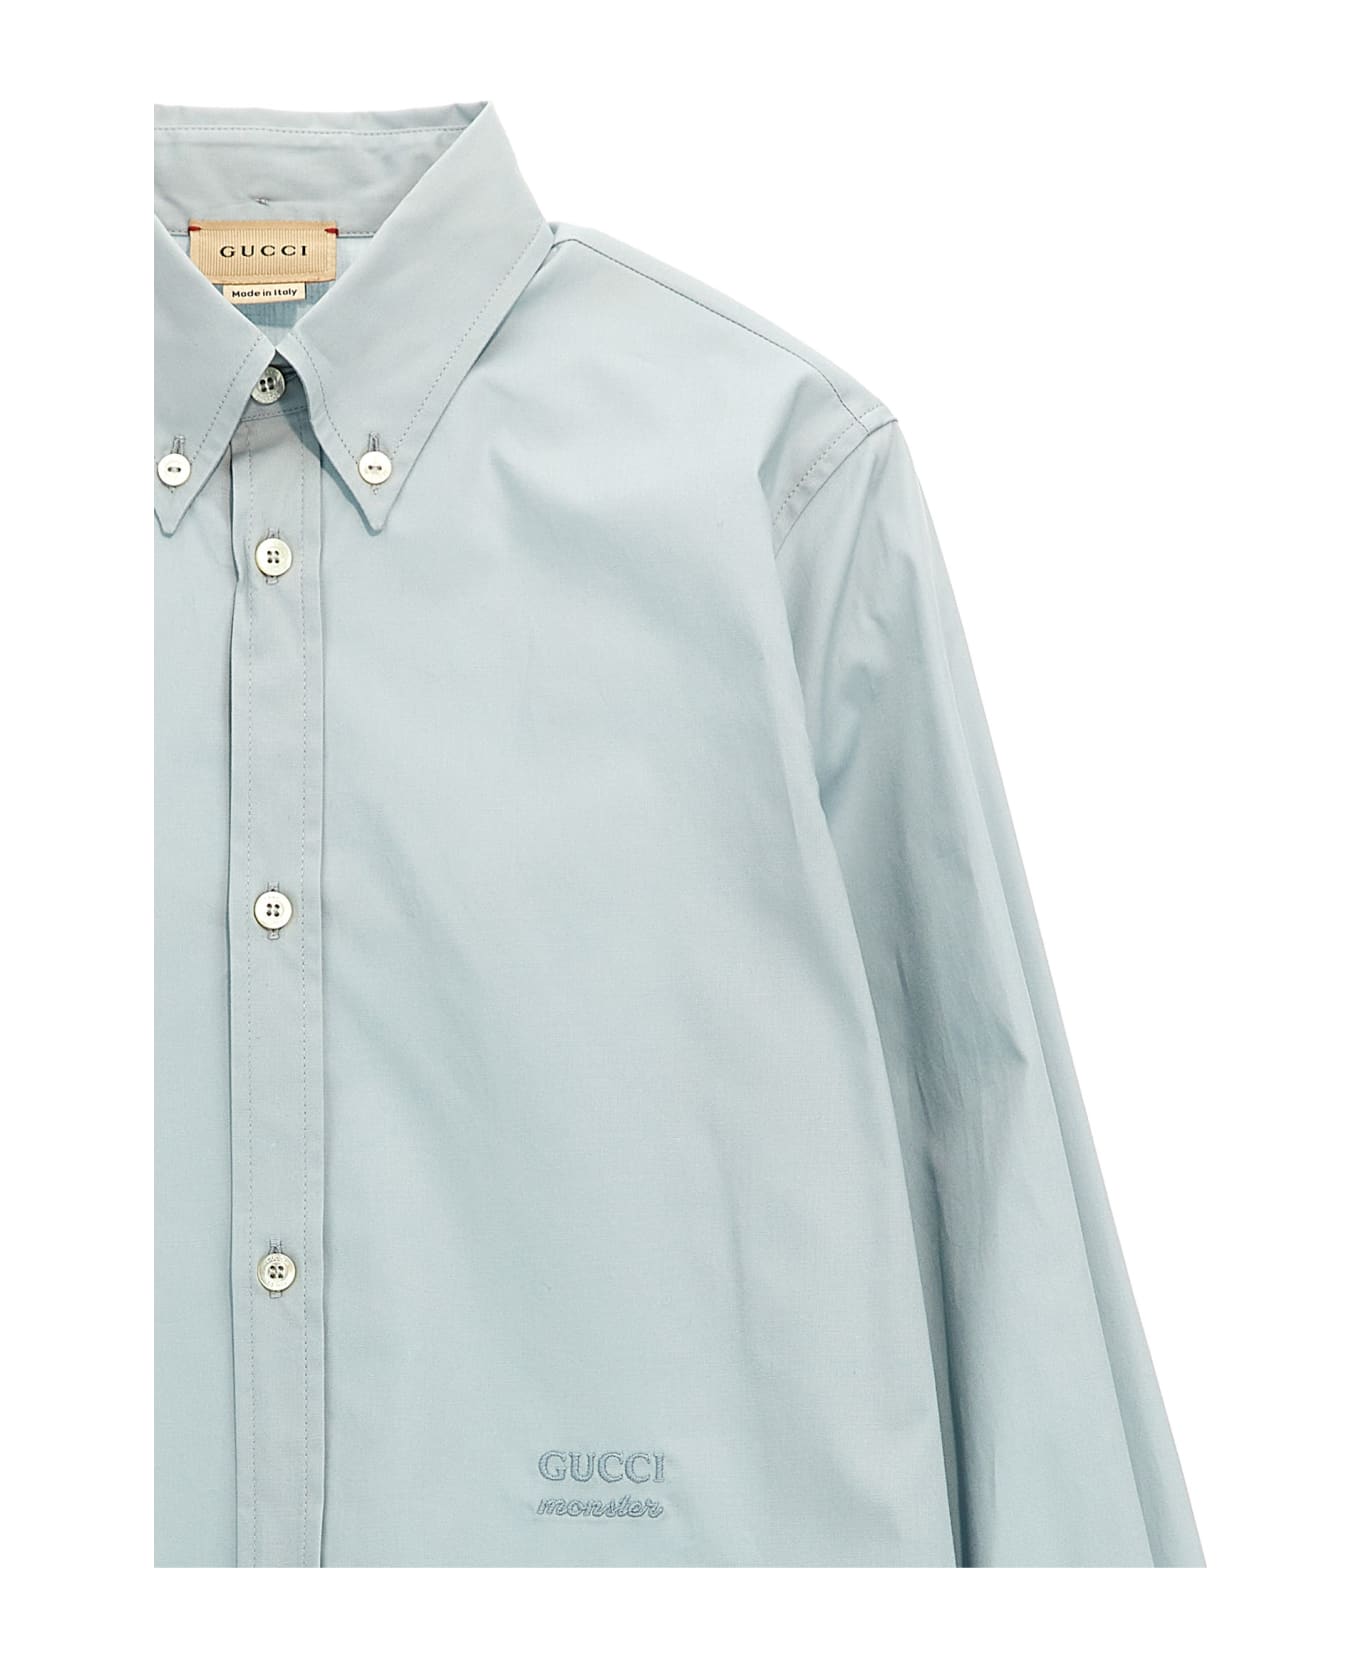 Gucci X © Oshkosh B'gosh, Inc. Shirt - Light Blue